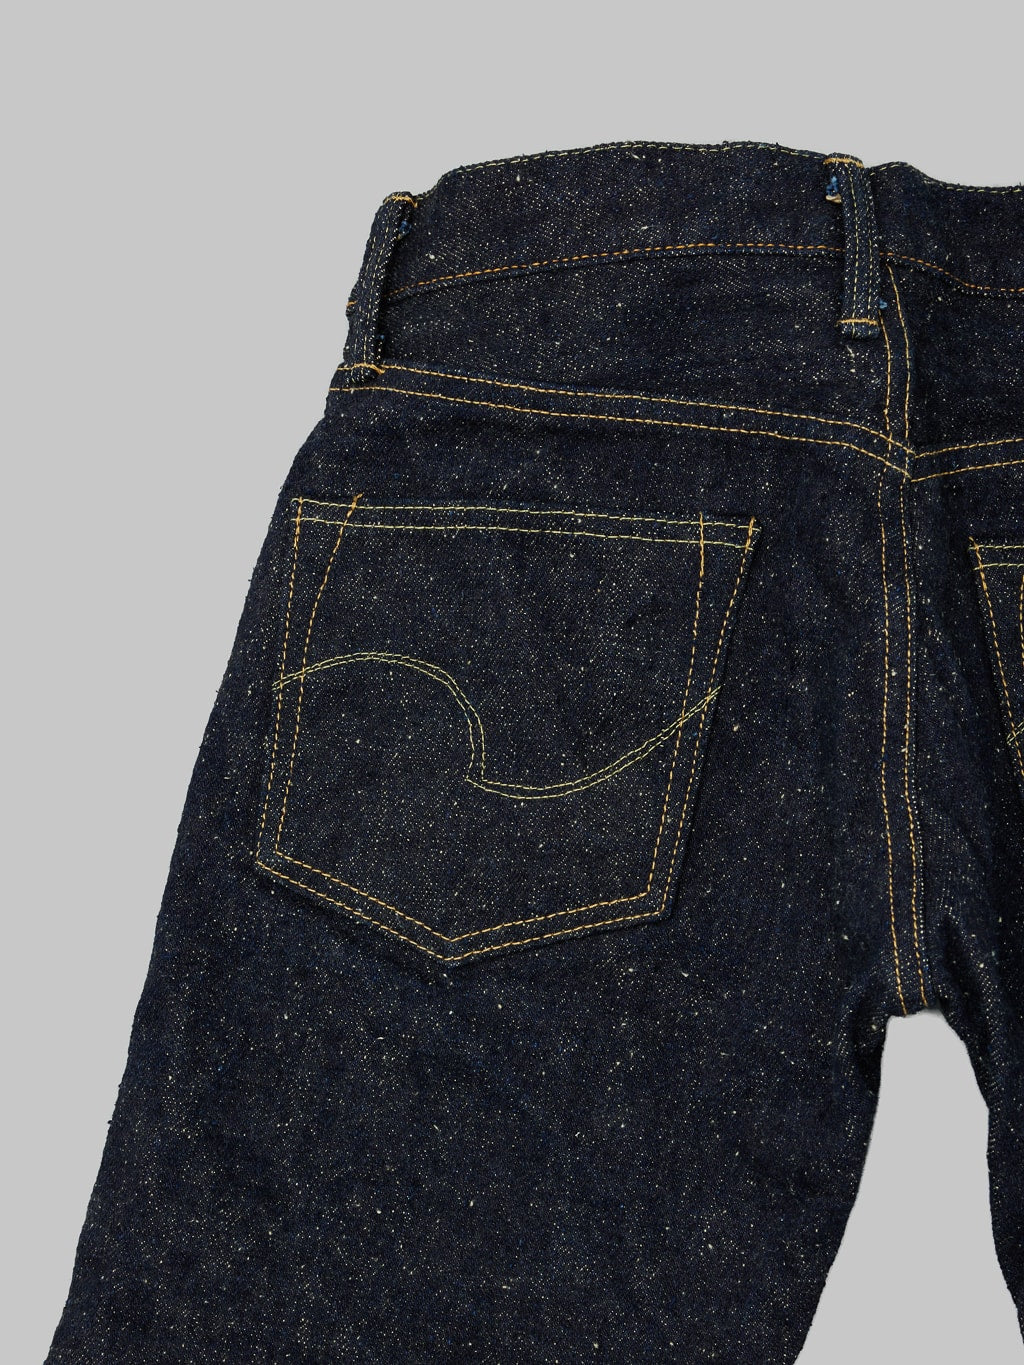 ONI Denim 544 Asphalt 20oz Stylish Tapered Jeans  back pocket details